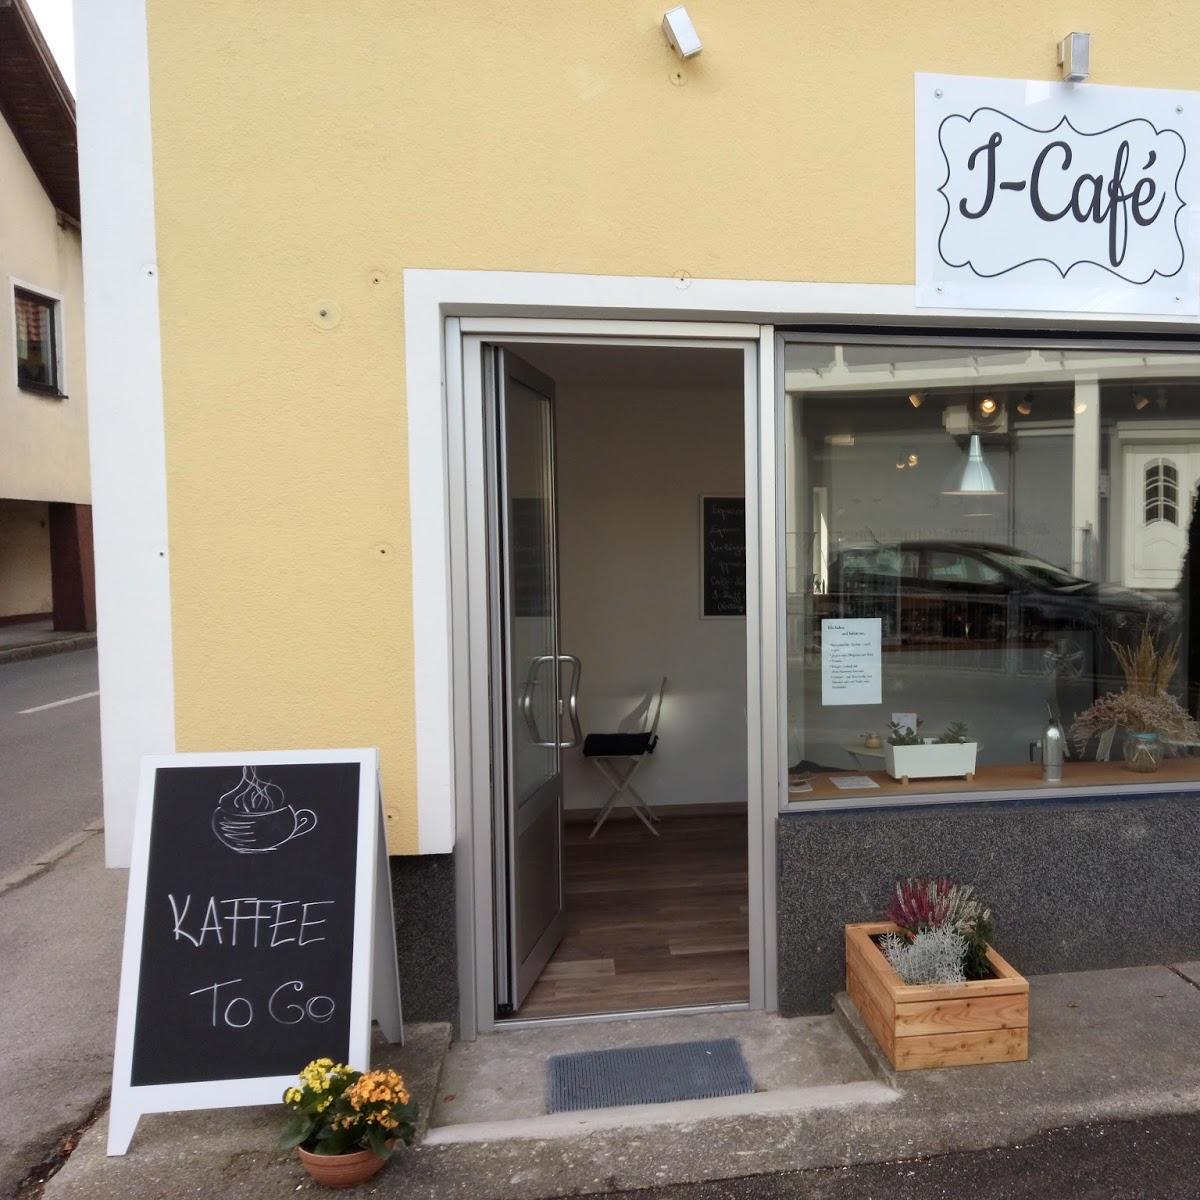 Restaurant "I-Café" in Grödig